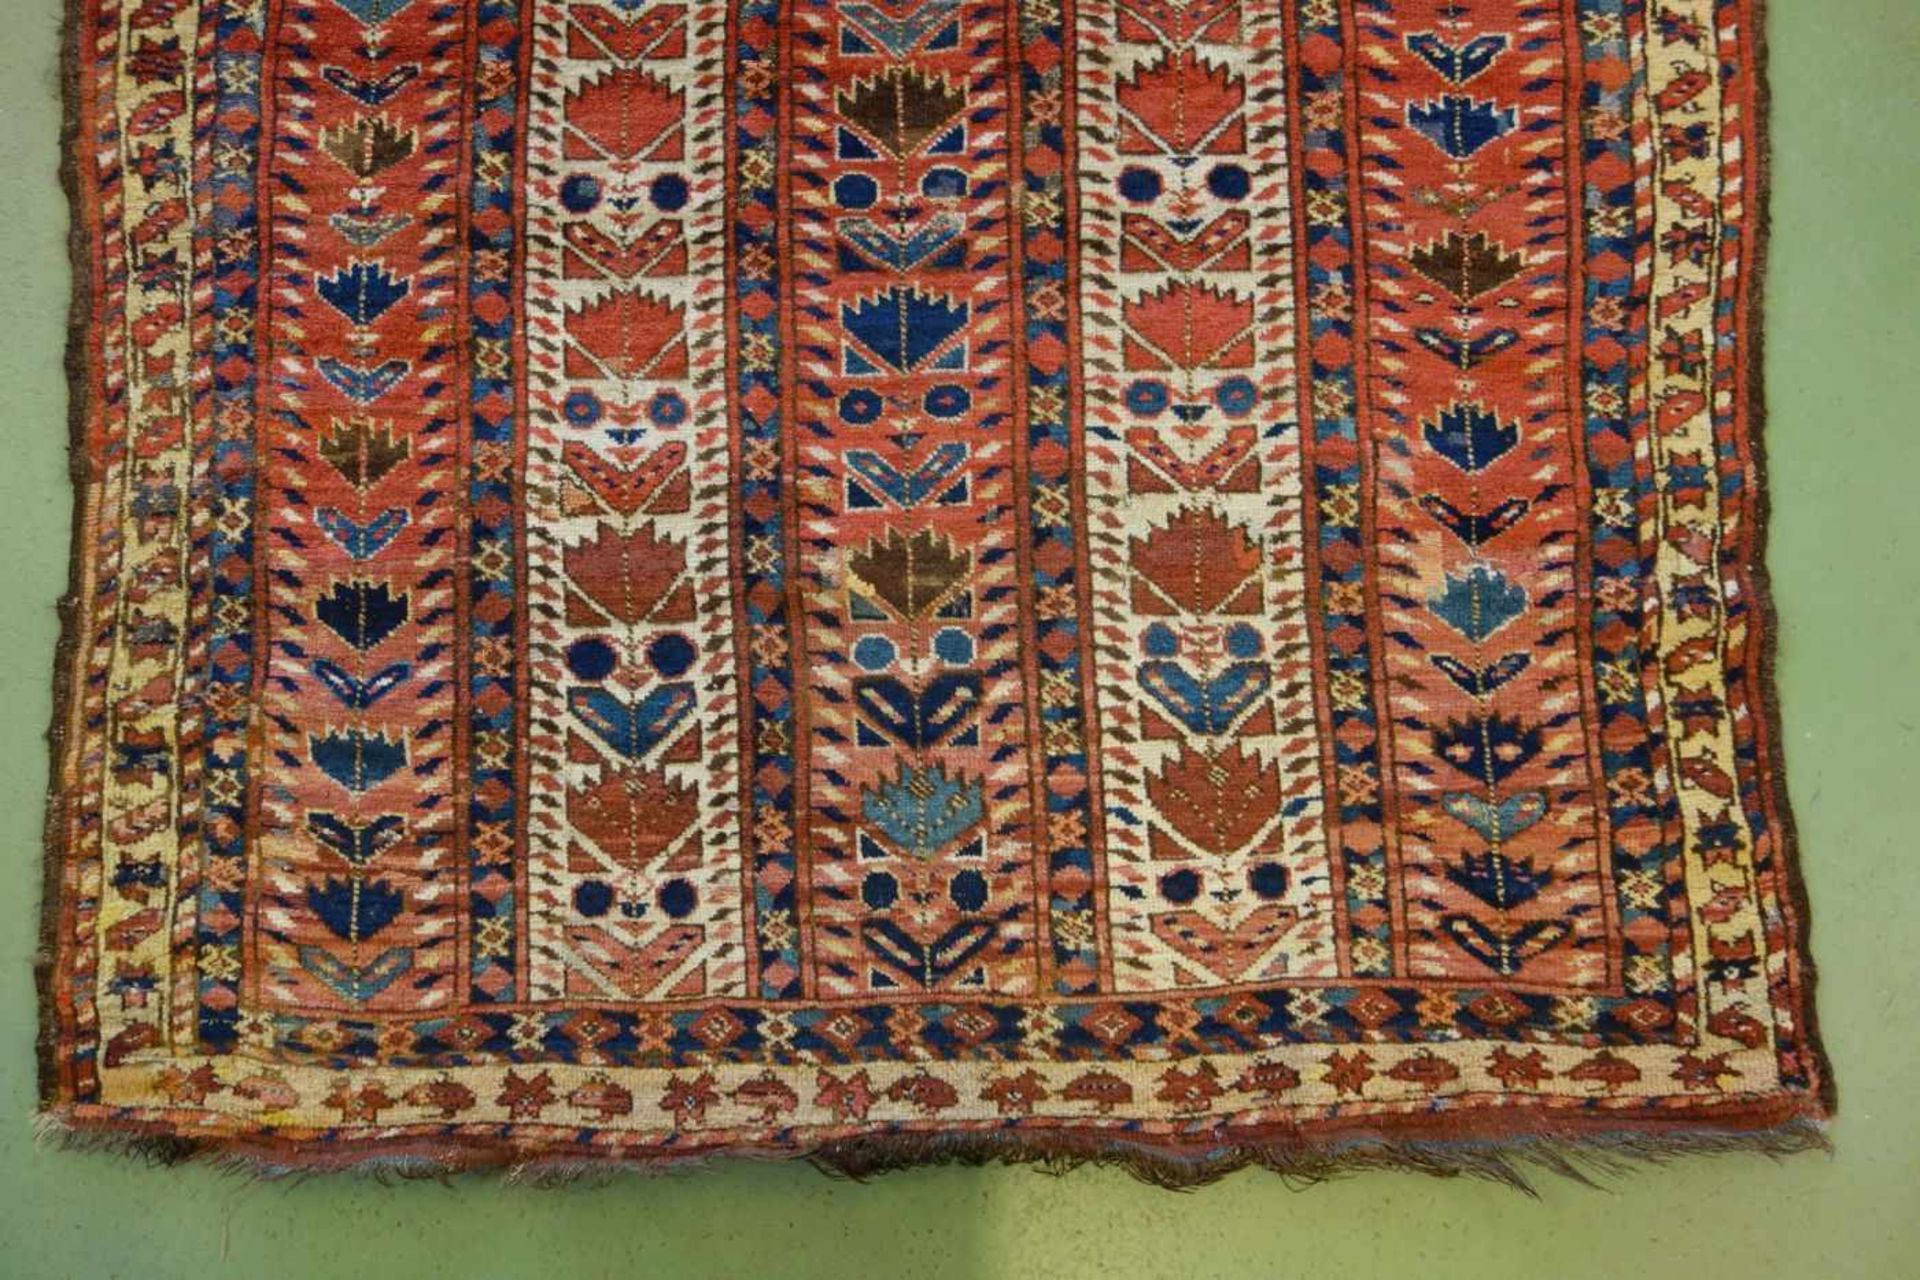 SCHMALER BESCHIR GEBETSTEPPICH / prayer rug, wohl 2. H. 19. Jh., Turkmenistan / Ersari-Beschir ( - Image 2 of 24